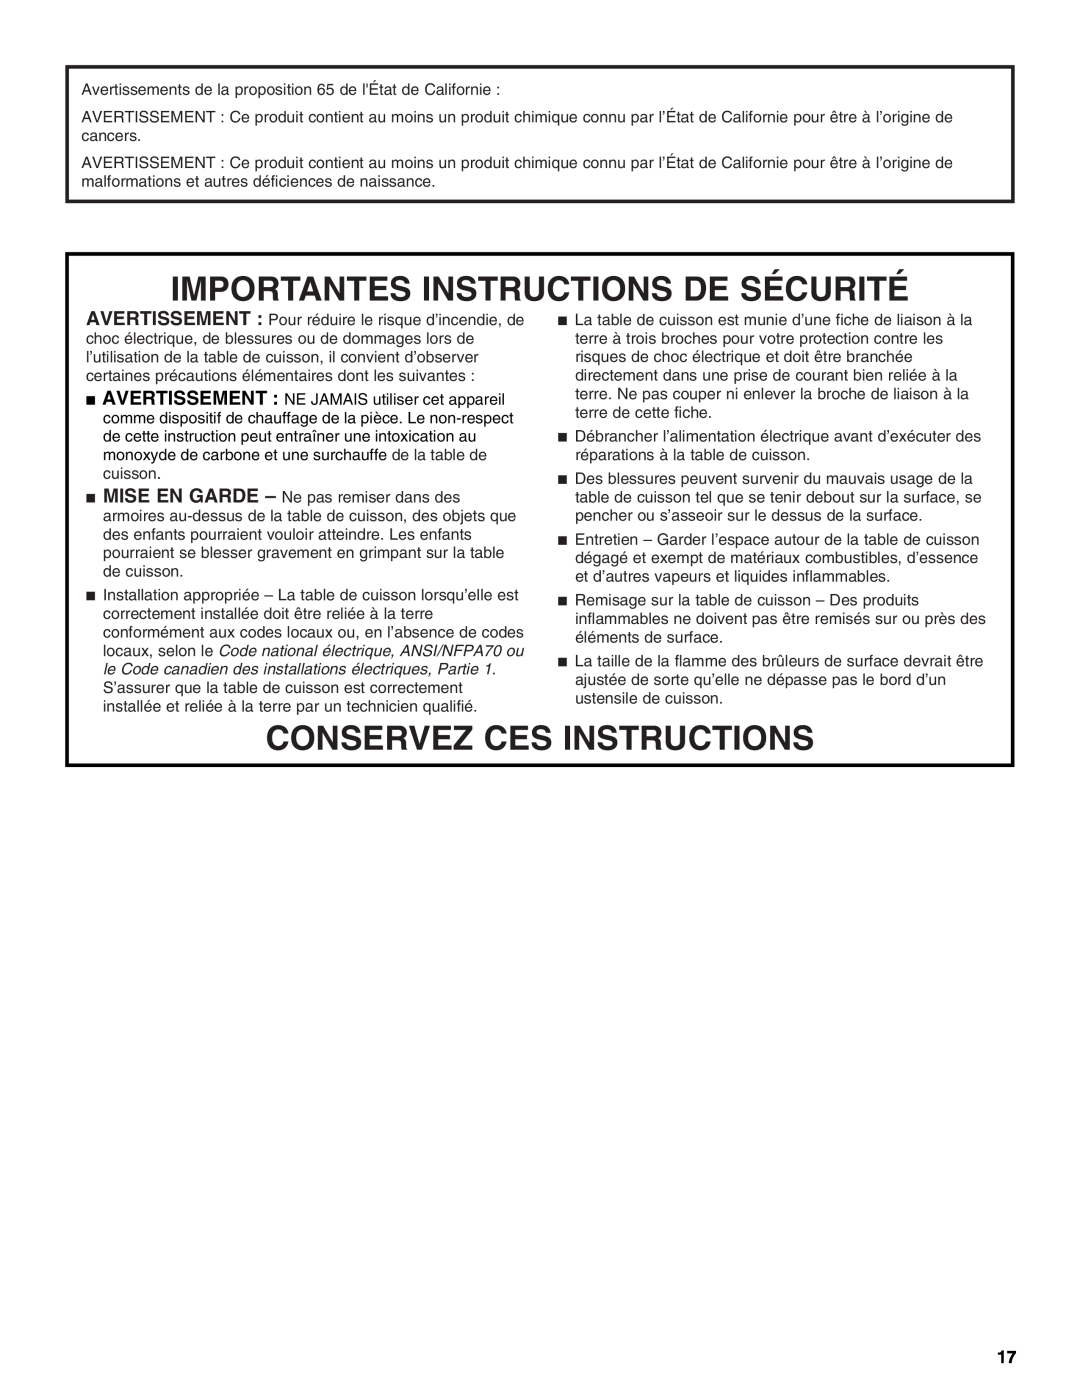 KitchenAid KGCV566 manual Importantes Instructions De Sécurité, Conservez Ces Instructions 